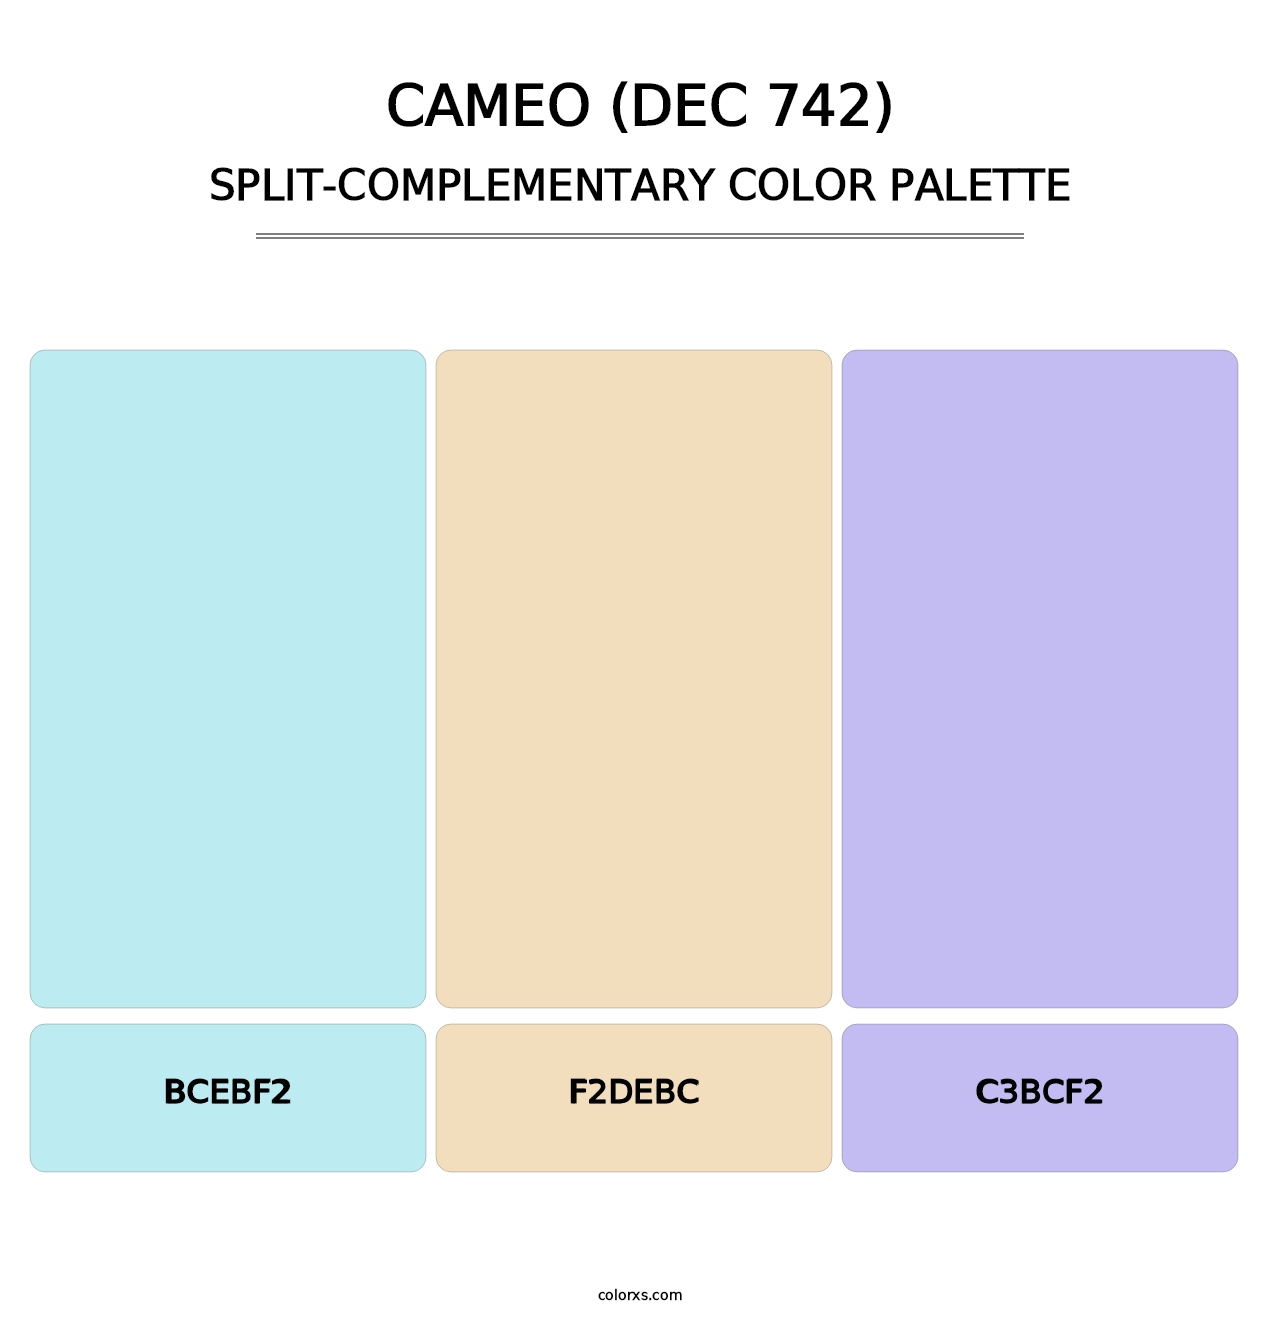 Cameo (DEC 742) - Split-Complementary Color Palette